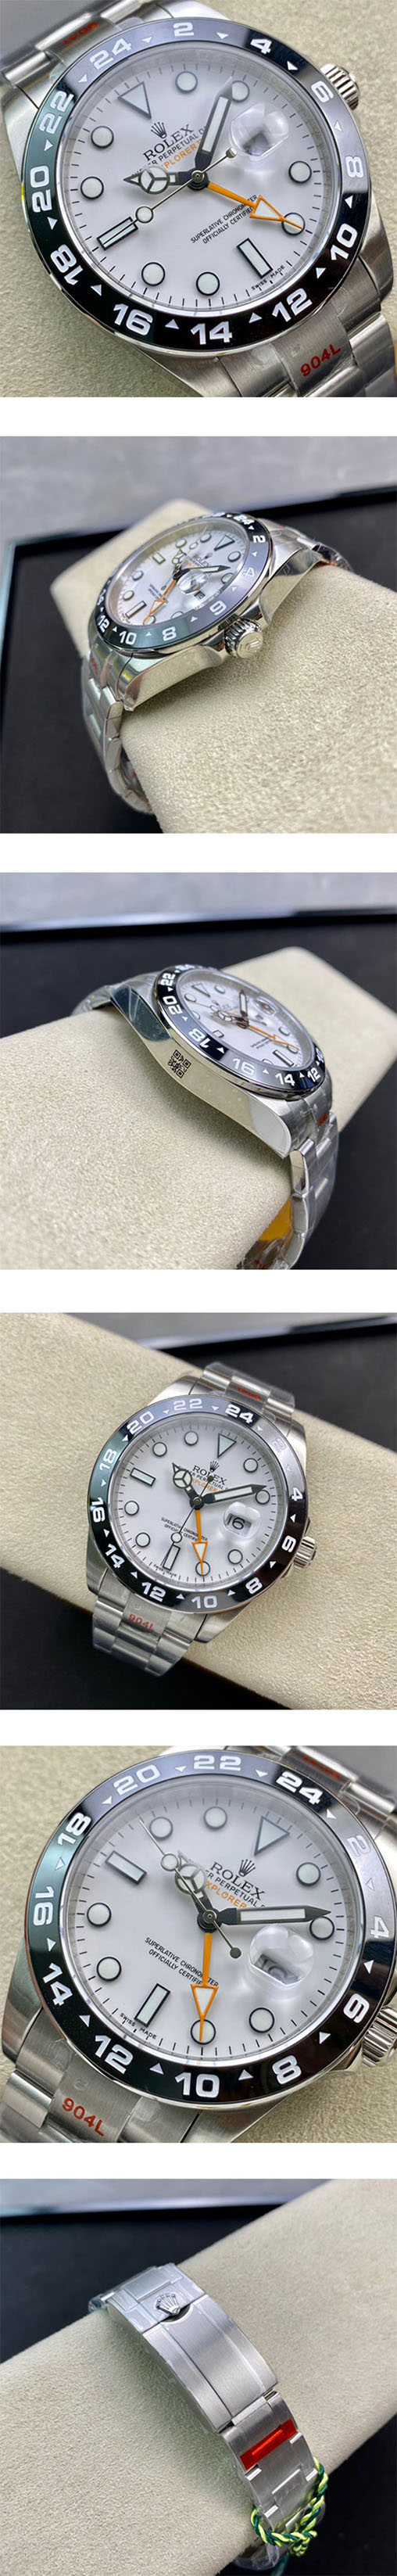 【ホワイト】エクスプローラーⅡ 216570-77210コピー時計のおすすめ